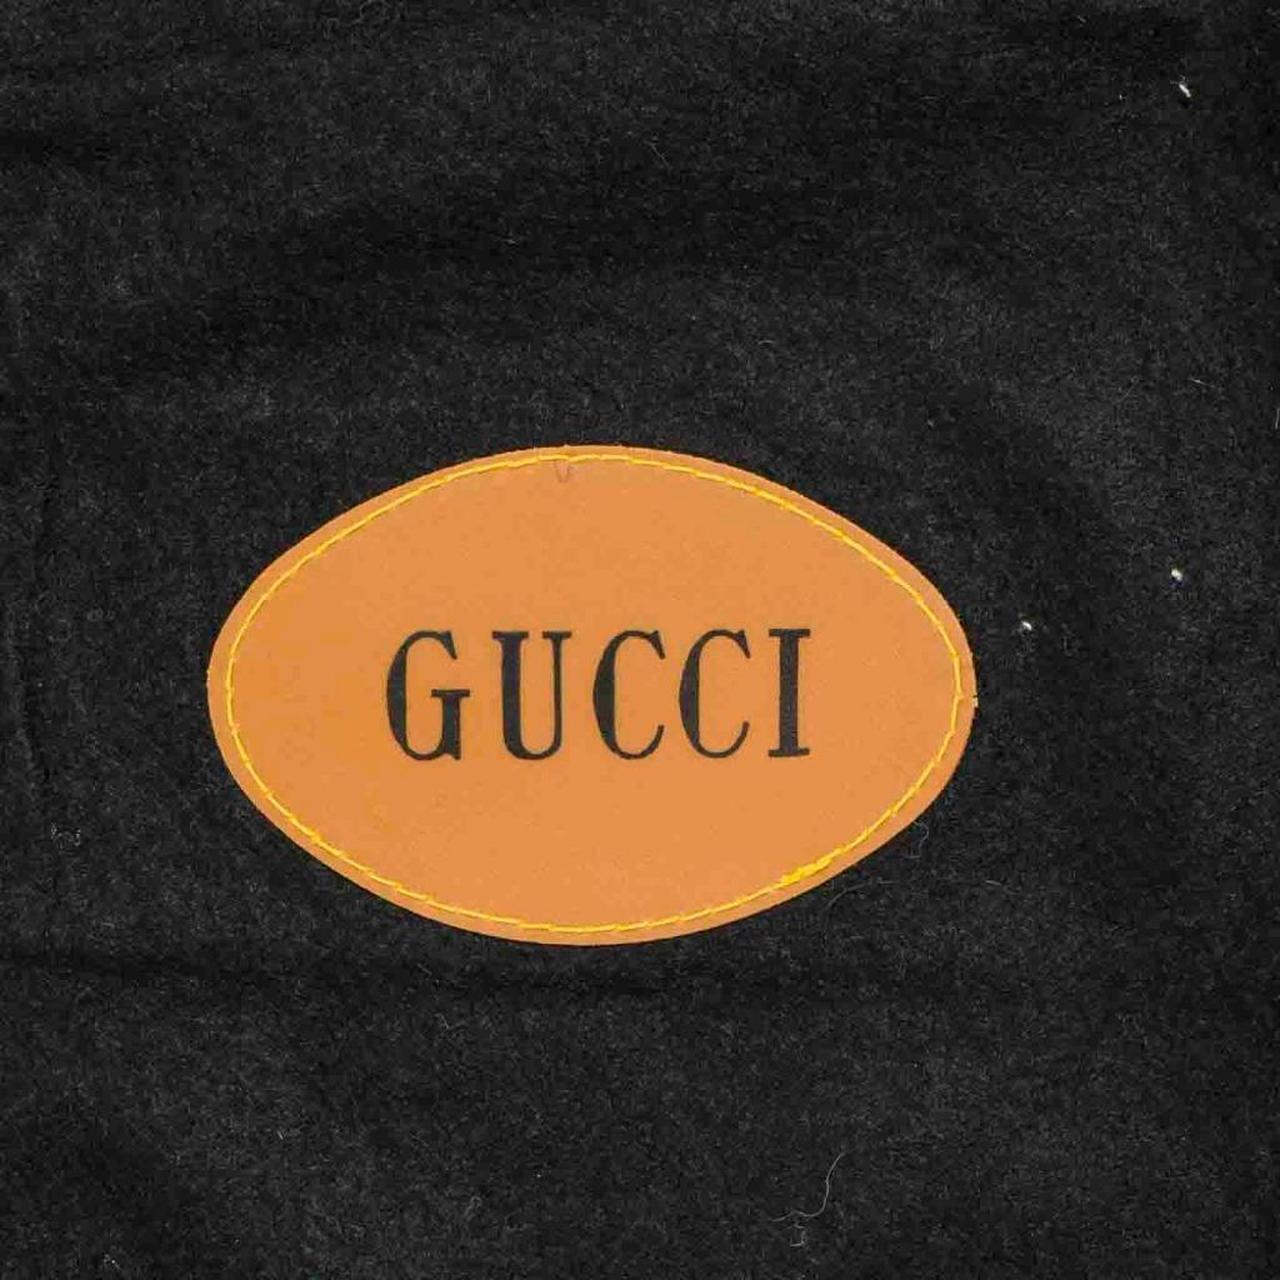 Gucci Men's Bag | Depop